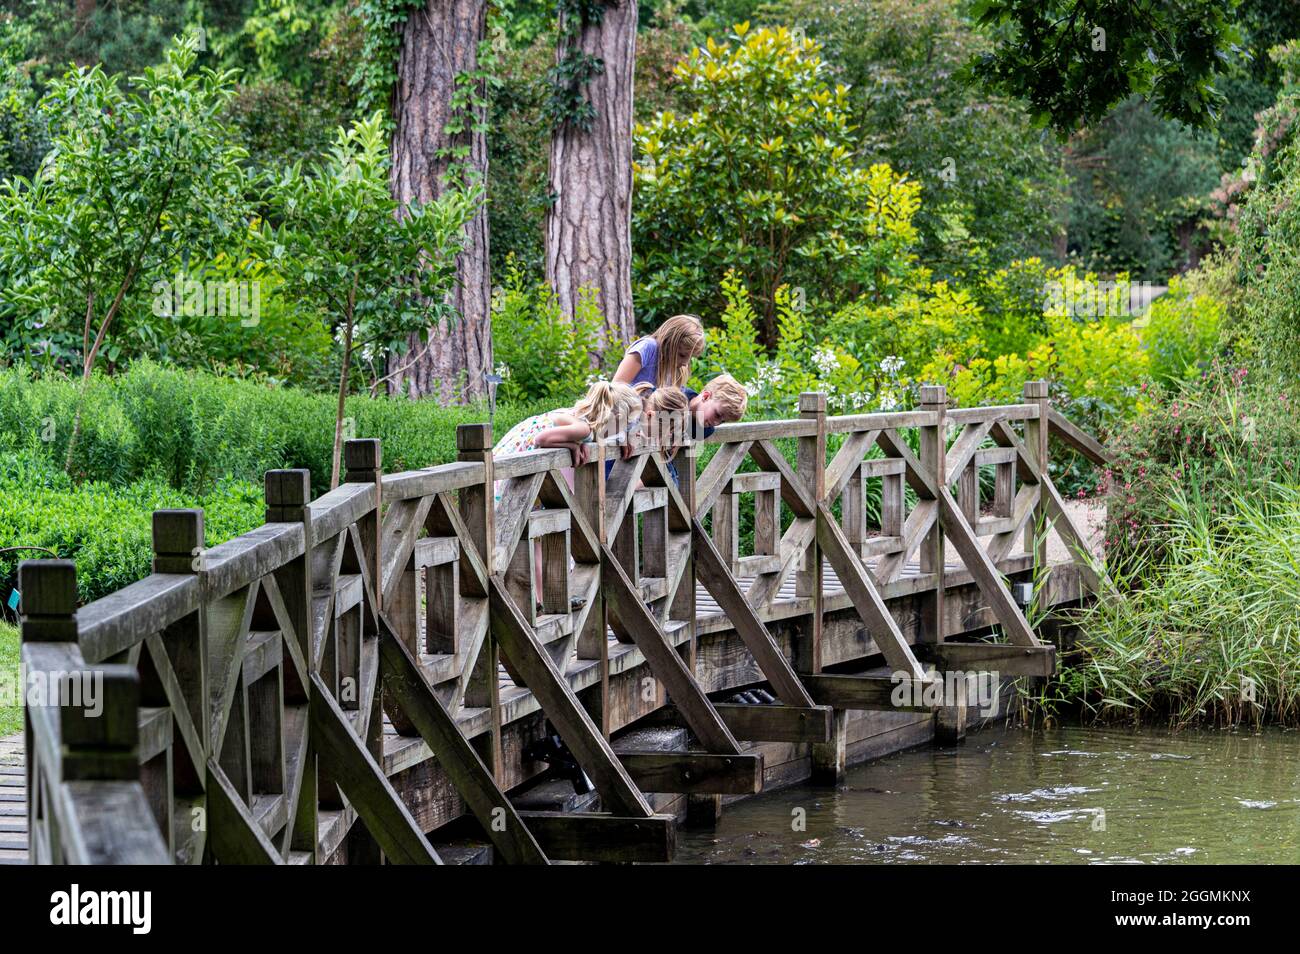 Kinder blicken über die Brücke auf Fische im Wasser. Fröhliche und fröhliche Zeiten im Sommer. Stockfoto